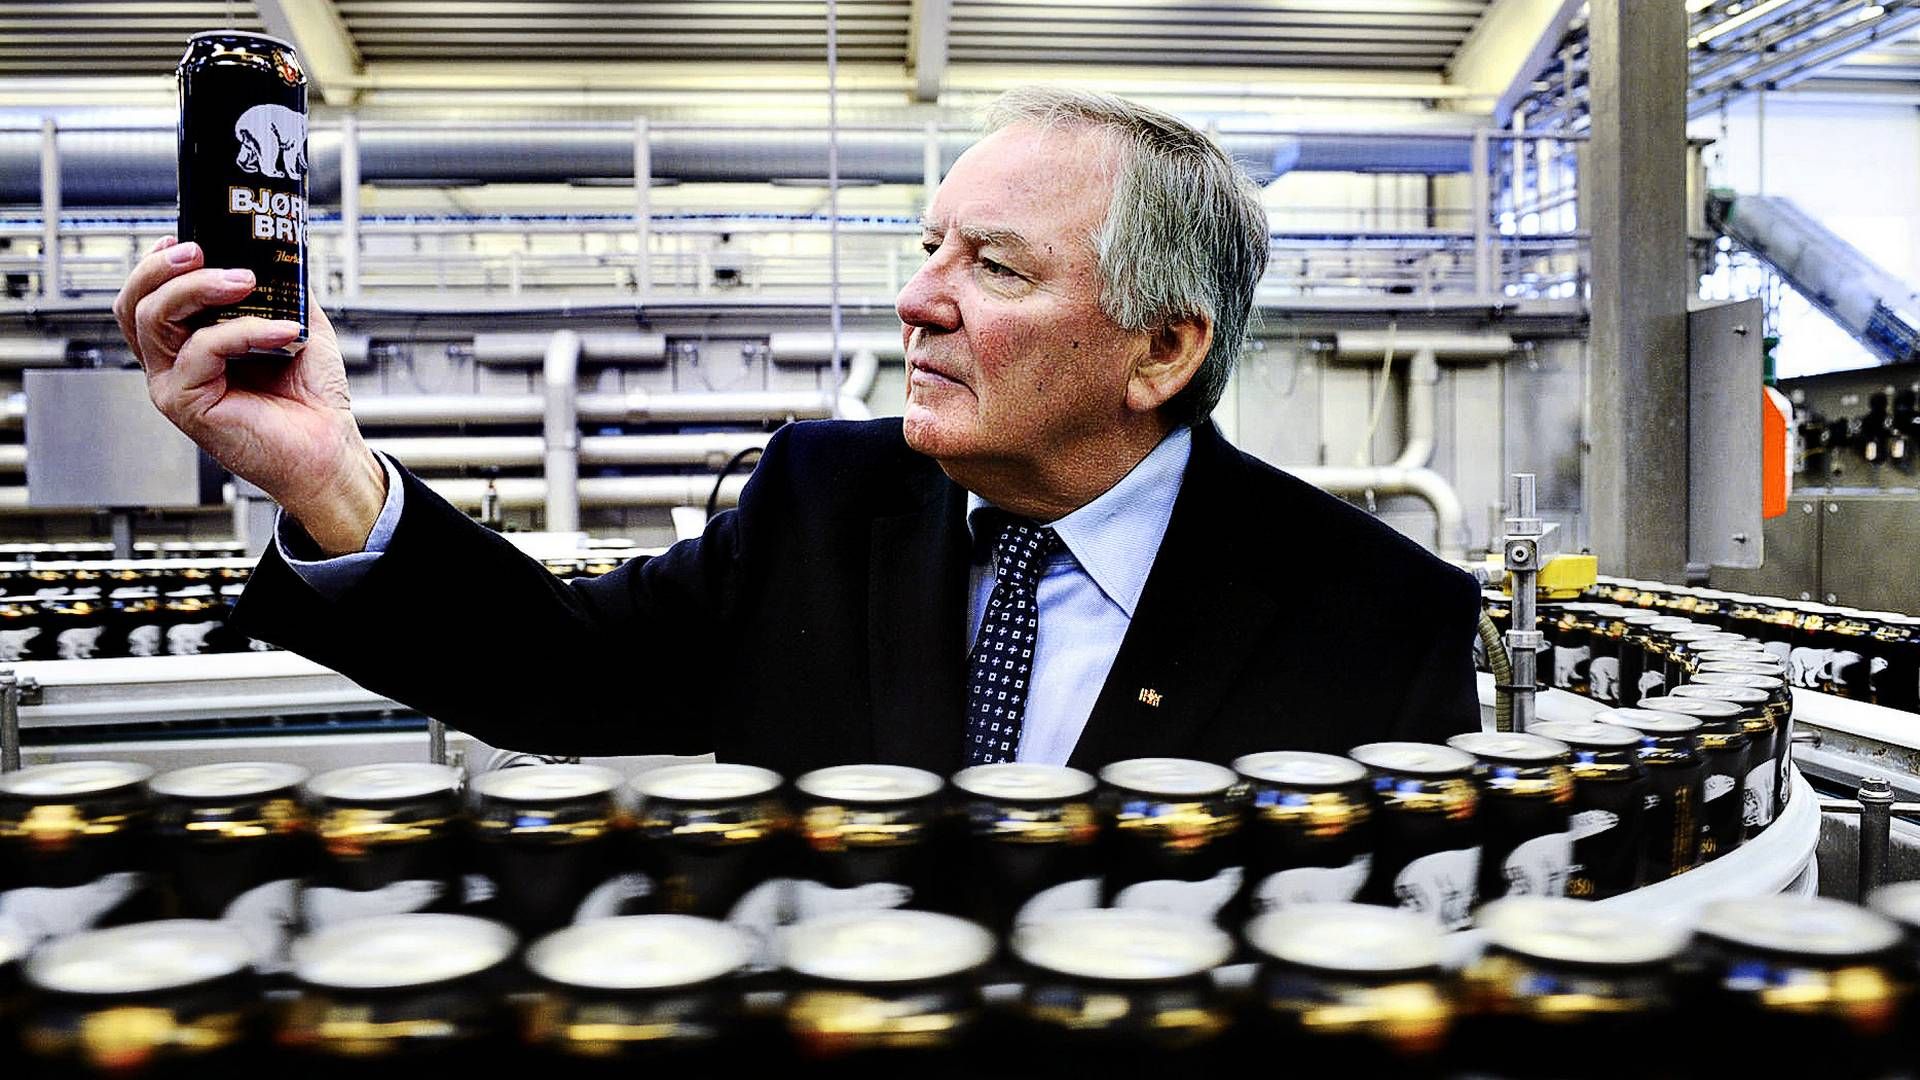 Bernd Griese har været direktør i bryggeriet Harbie fra 1981-1986, hvor han så blev udnævnt til administrerende direktør, som han fortsatte i helt frem til 2019. Nu træder han ud af selskabets bestyrelse. | Foto: Mik Eskestad